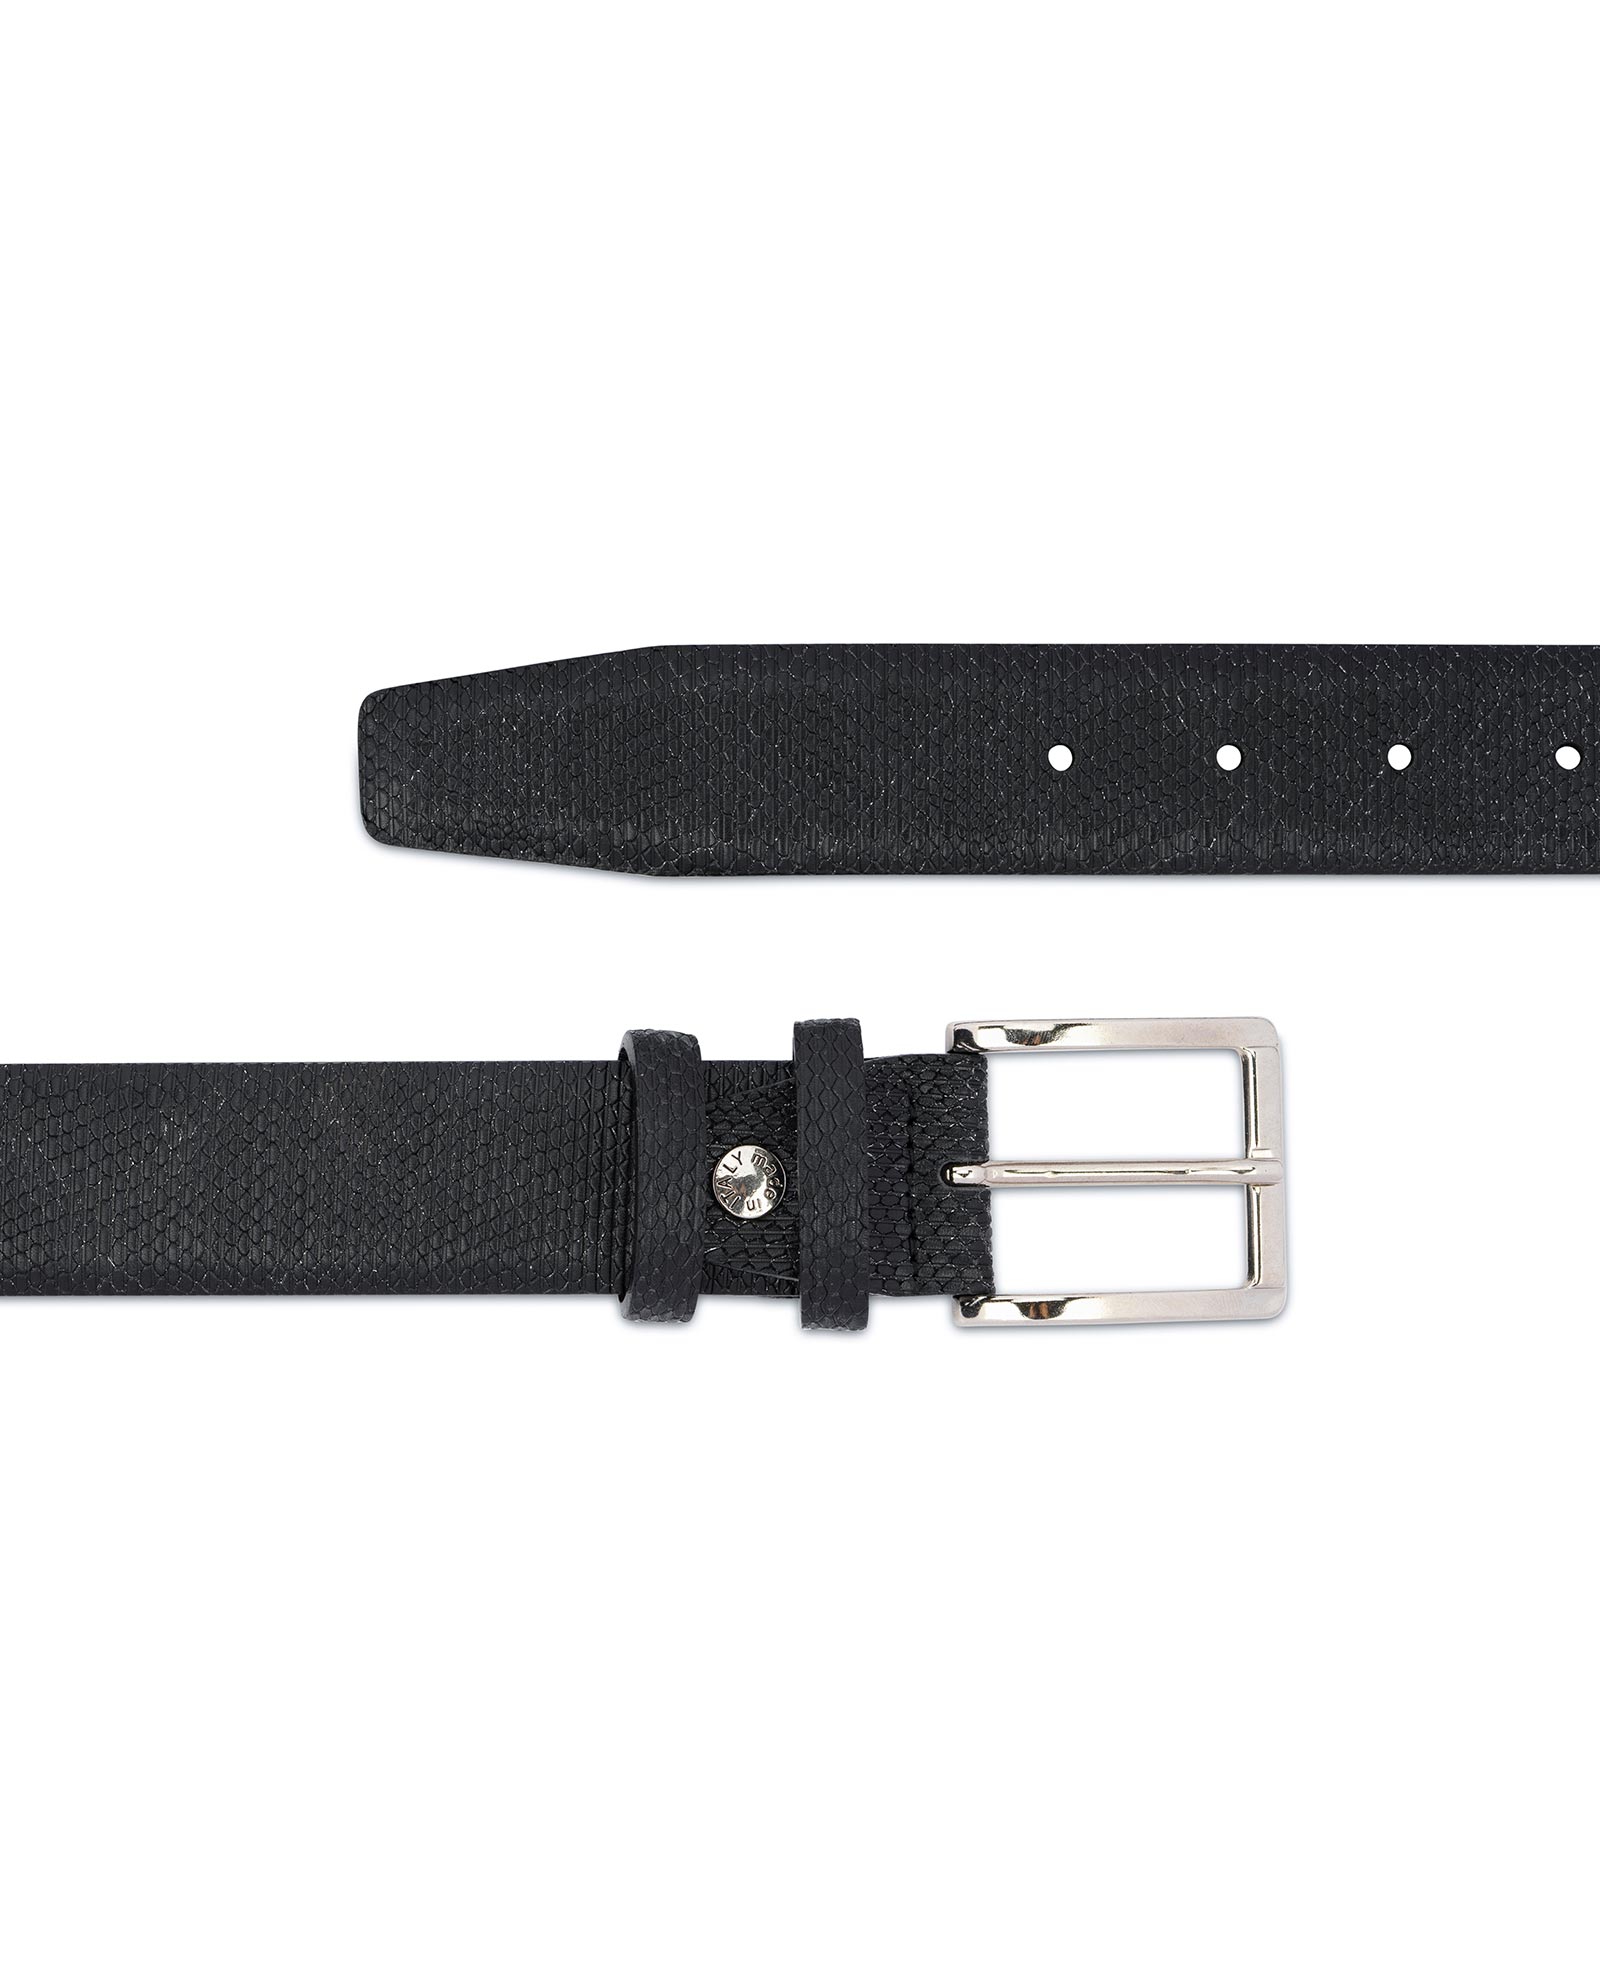 Buy Snake Print Belt for Men | Black 3.5 cm | LeatherBeltsOnline.com